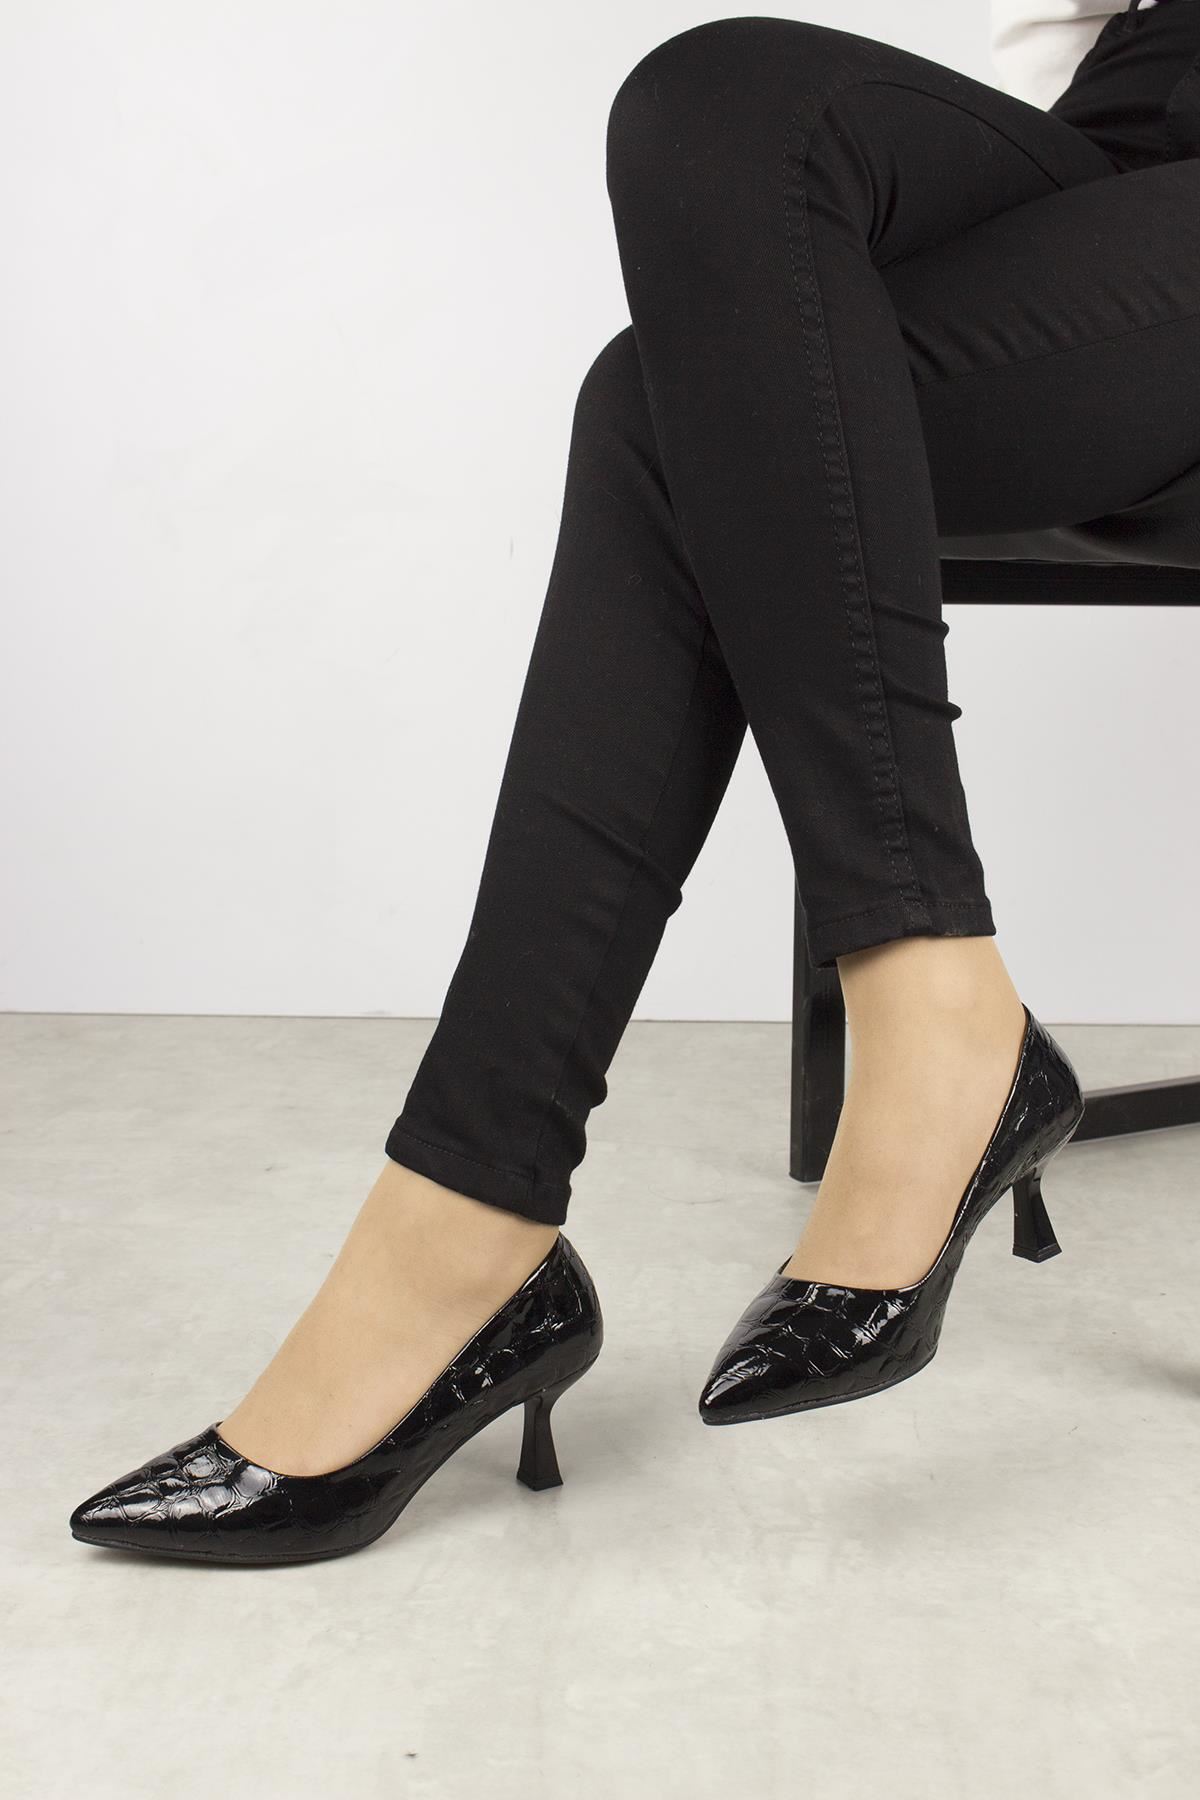 Asensio Kadın Klasik Topuklu Ayakkabı SİYAH KROKO